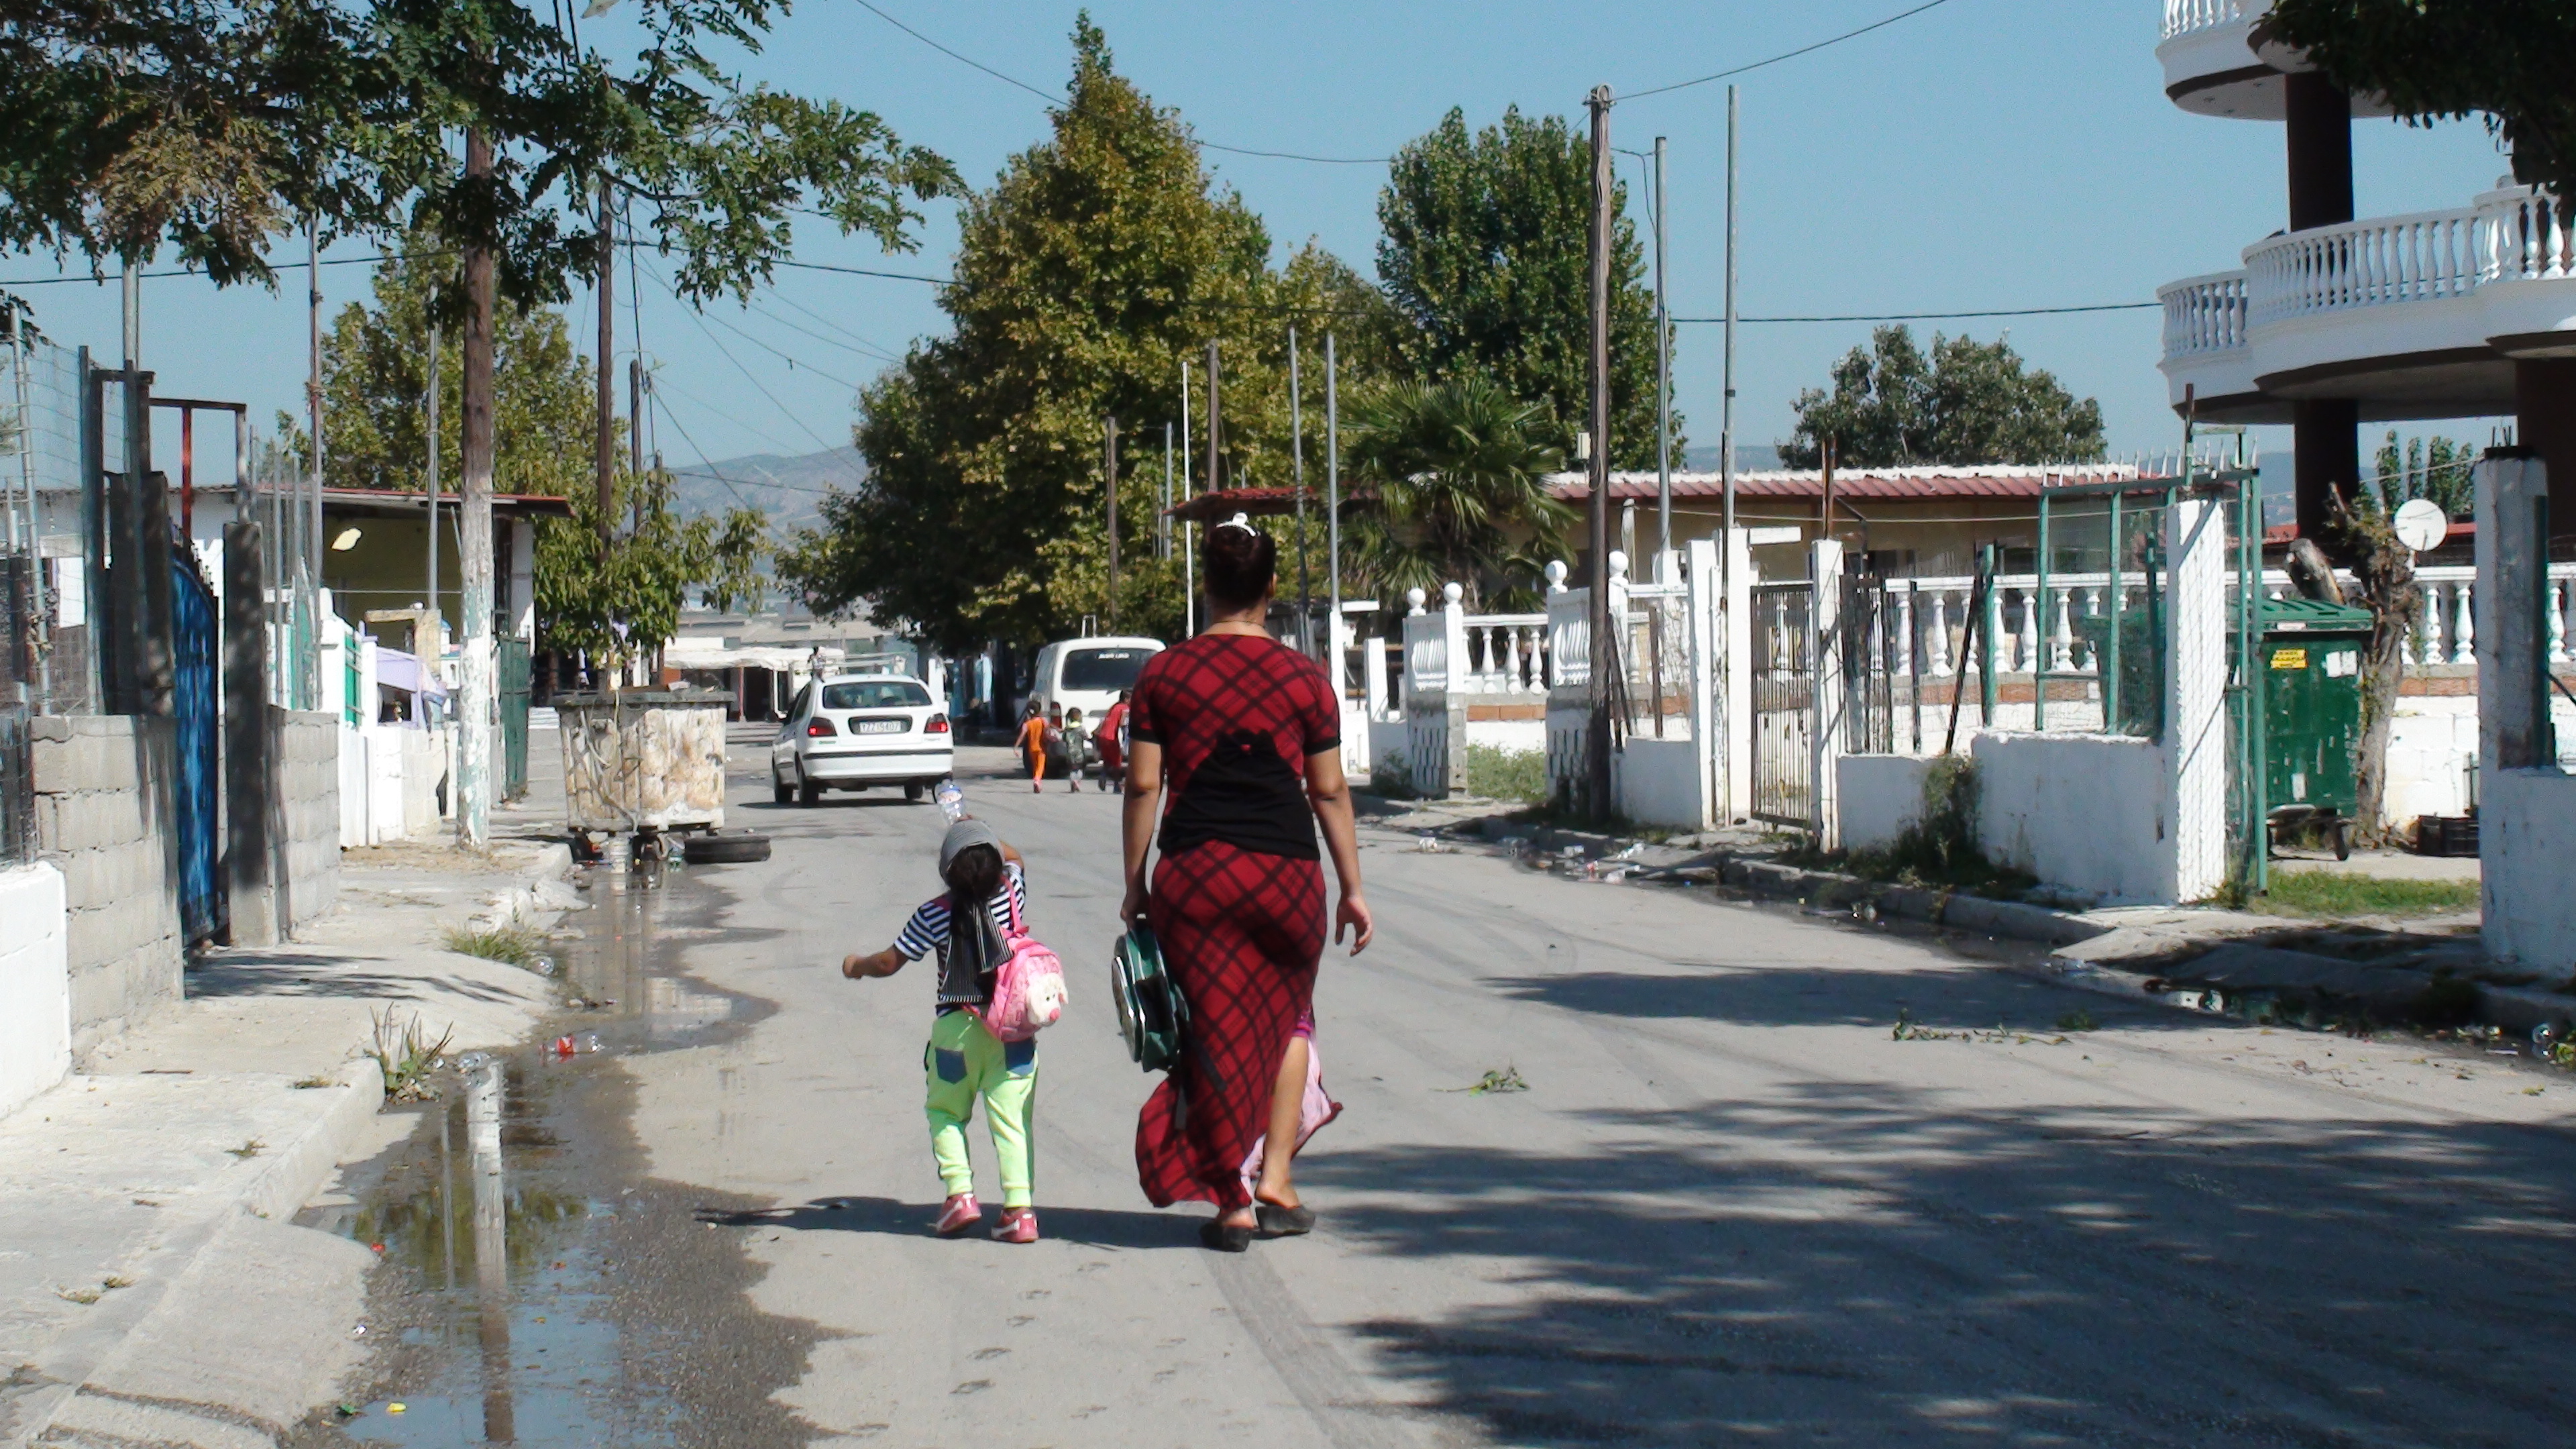 Οικισμός Ρομά Αγ. Σοφίας: Σε πλήρη εγκατάλειψη, χωρίς δυνατότητα μετακίνησης στα σχολεία εκατοντάδες παιδιά